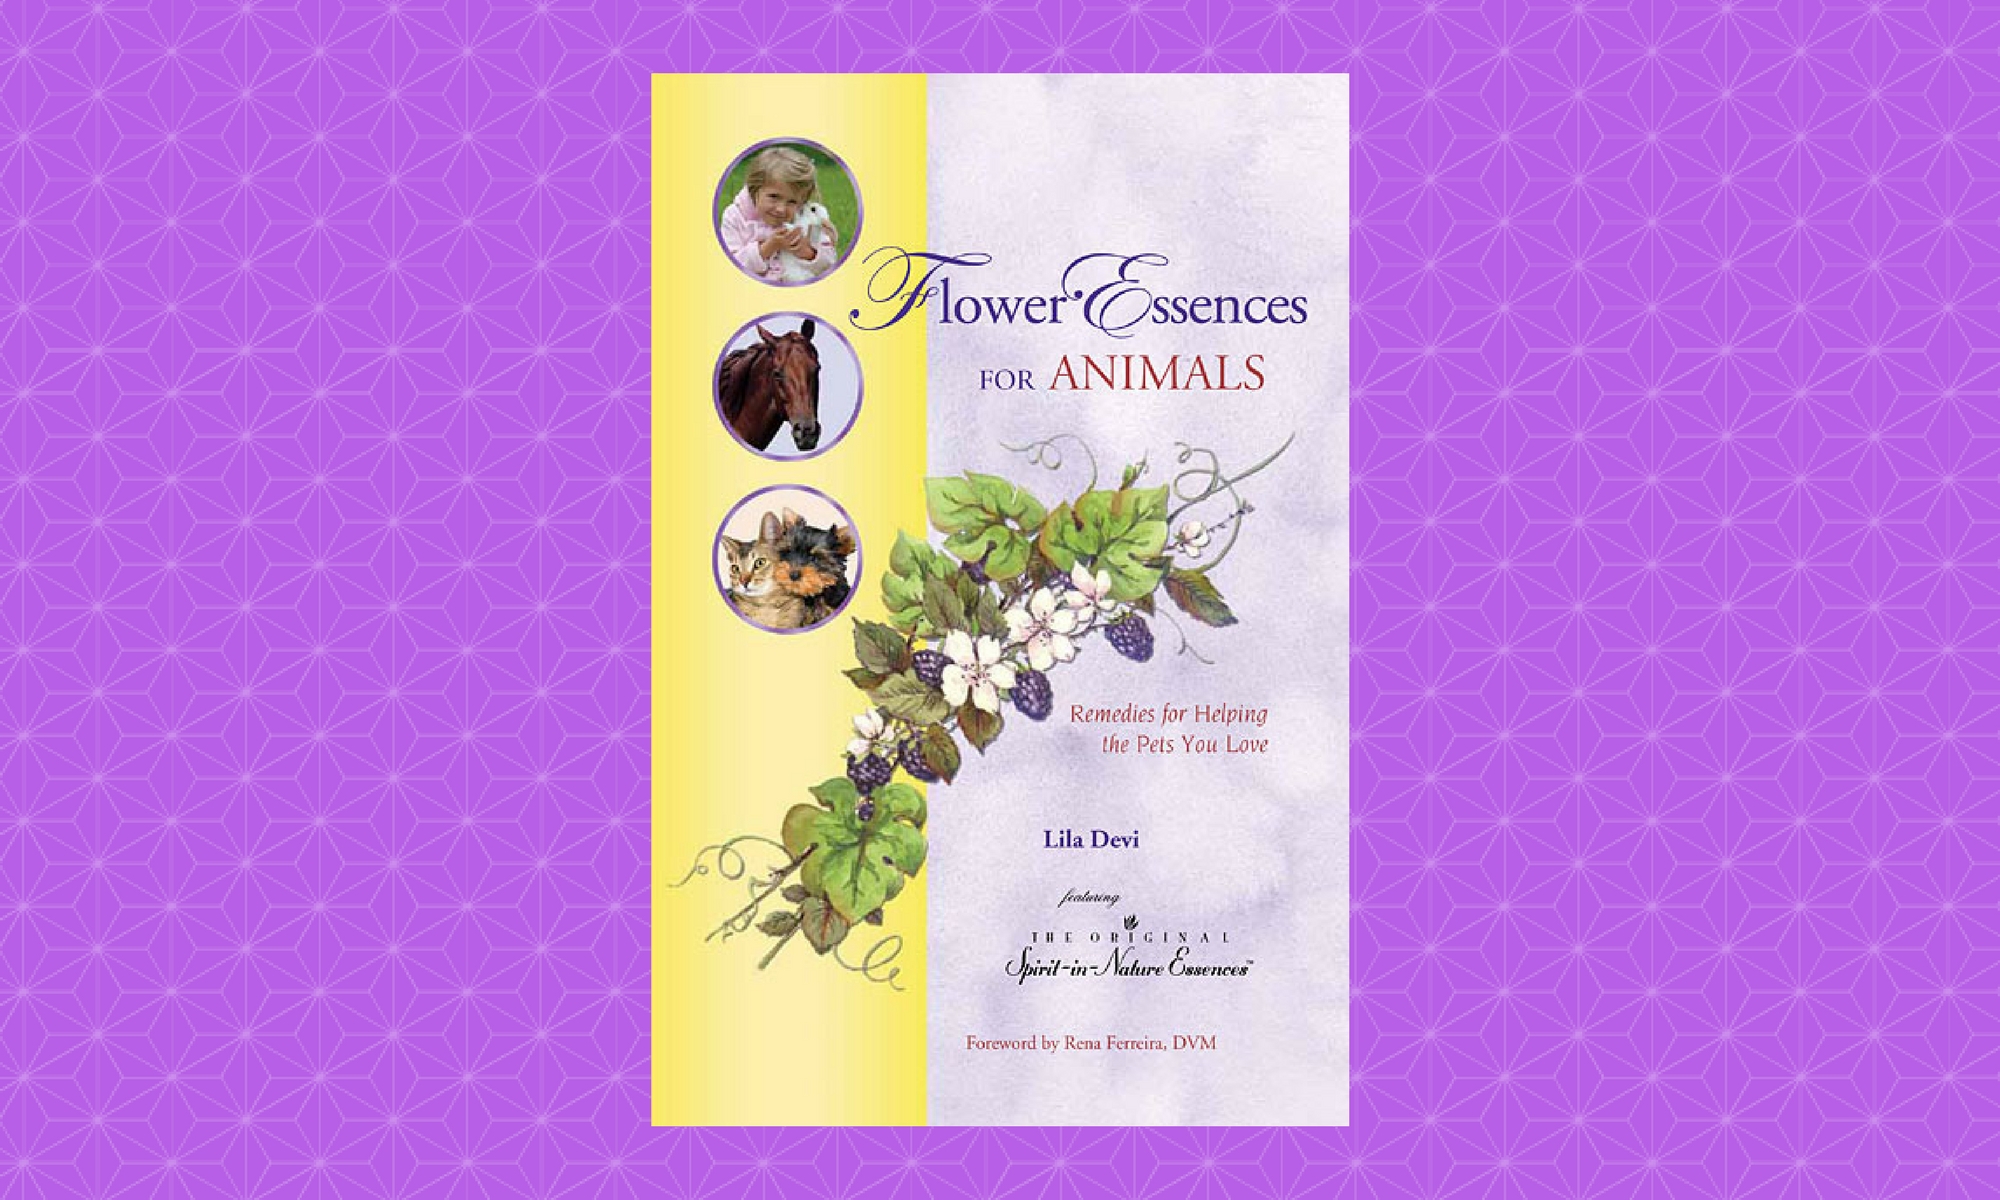 liladeviauthor, liladevi, lila devi, flower essences for animals,